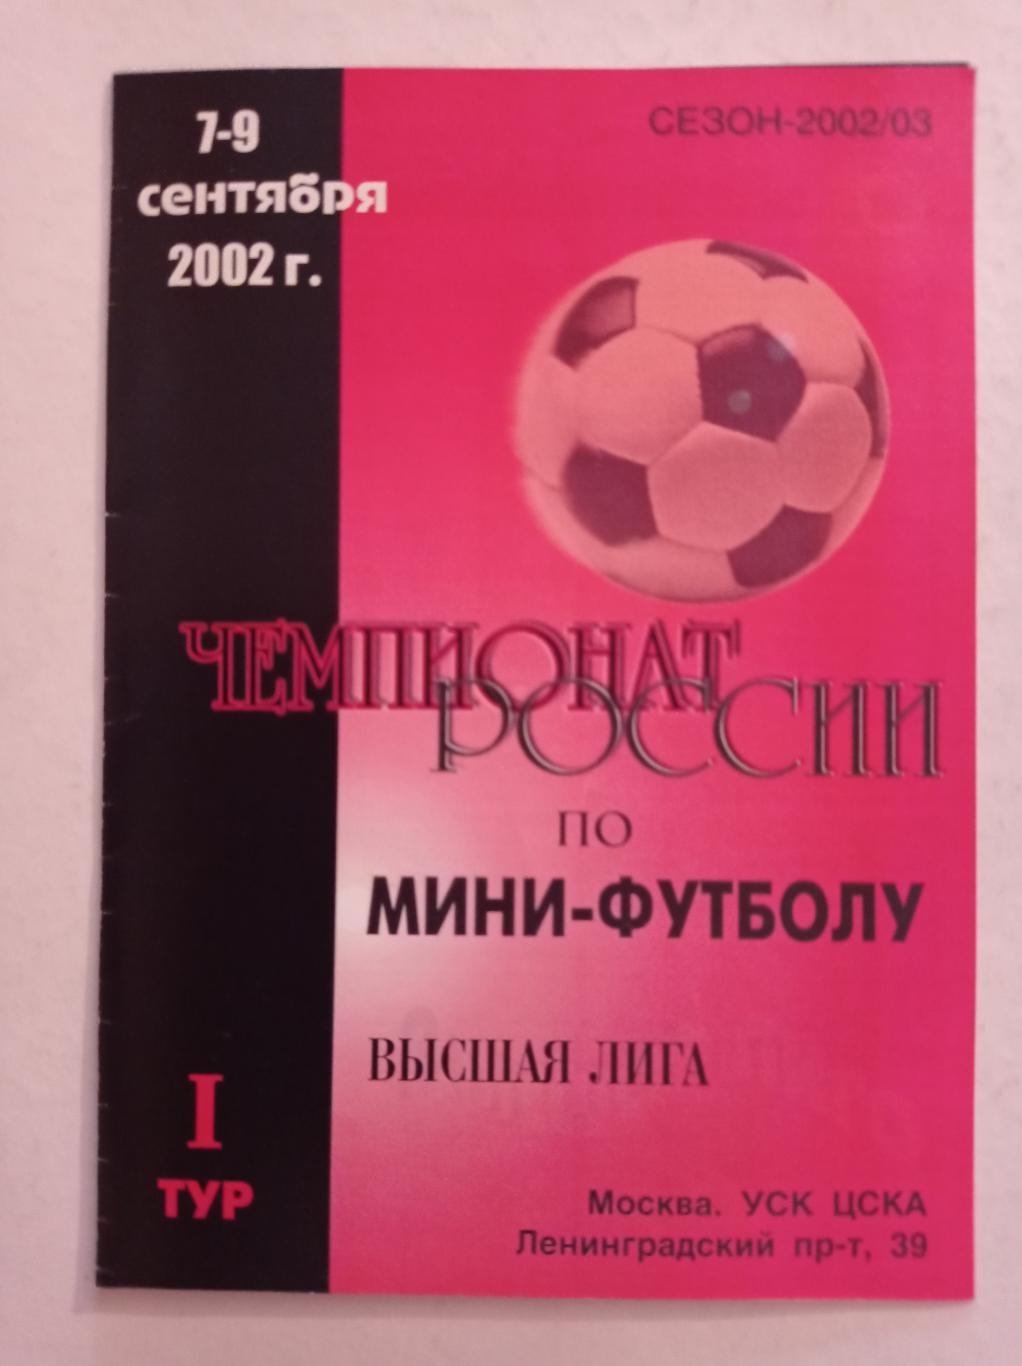 Чемпионат России по мини-футболу 7-9.09.2002 Москва